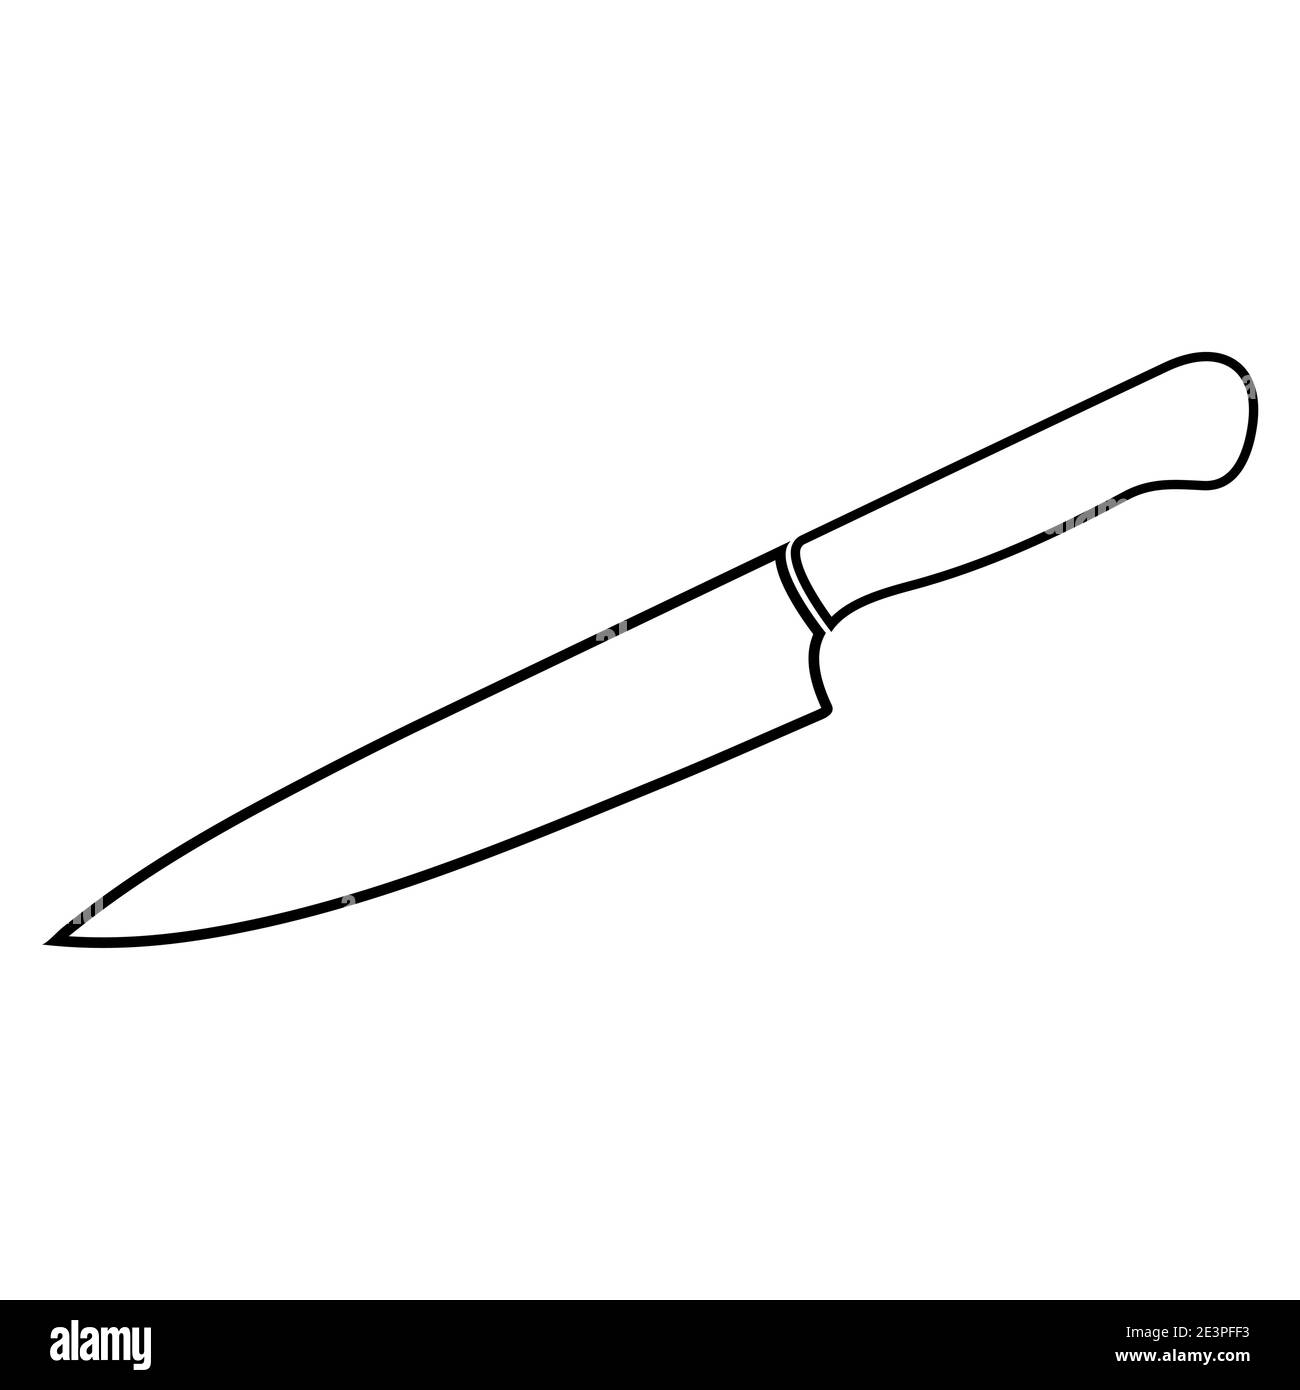 https://c8.alamy.com/compit/2e3pff3/design-del-profilo-dei-coltelli-icona-contour-delle-attrezzature-chef-simbolo-della-cucina-vettoriale-isolato-su-sfondo-bianco-2e3pff3.jpg